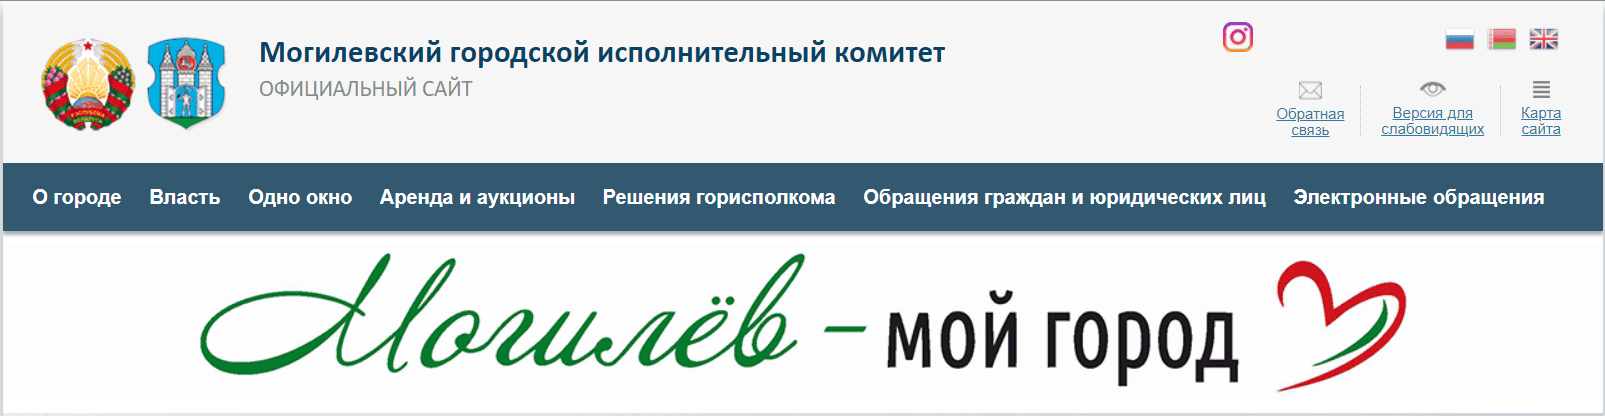 Могилевский городской исполнительный комитет (mogilev.gov.by) - официальный сайт